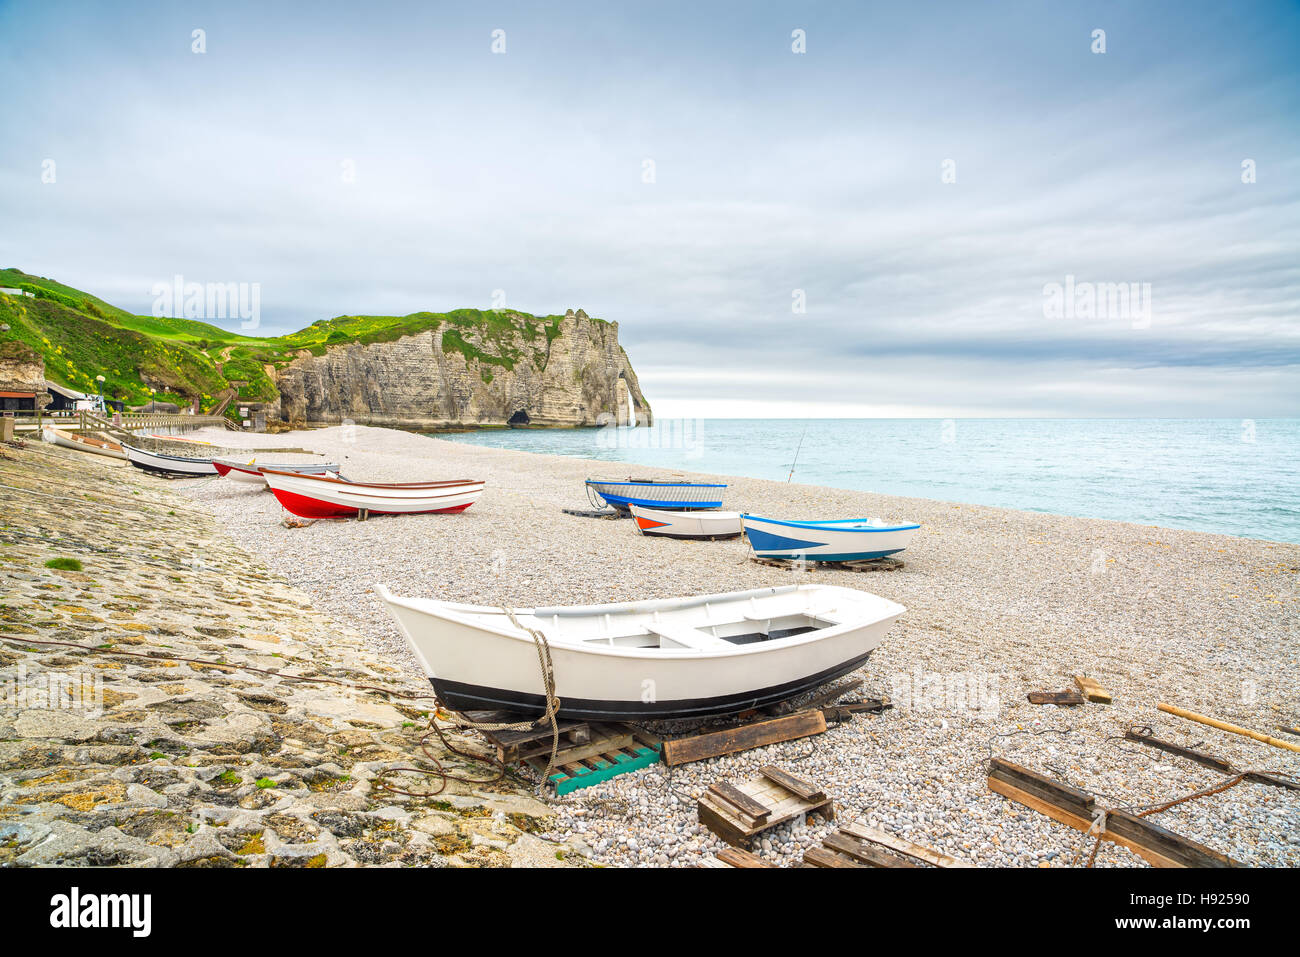 Le village d'Etretat, sa baie, plage falaise aval et les bateaux. Normandie, France, Europe. Banque D'Images